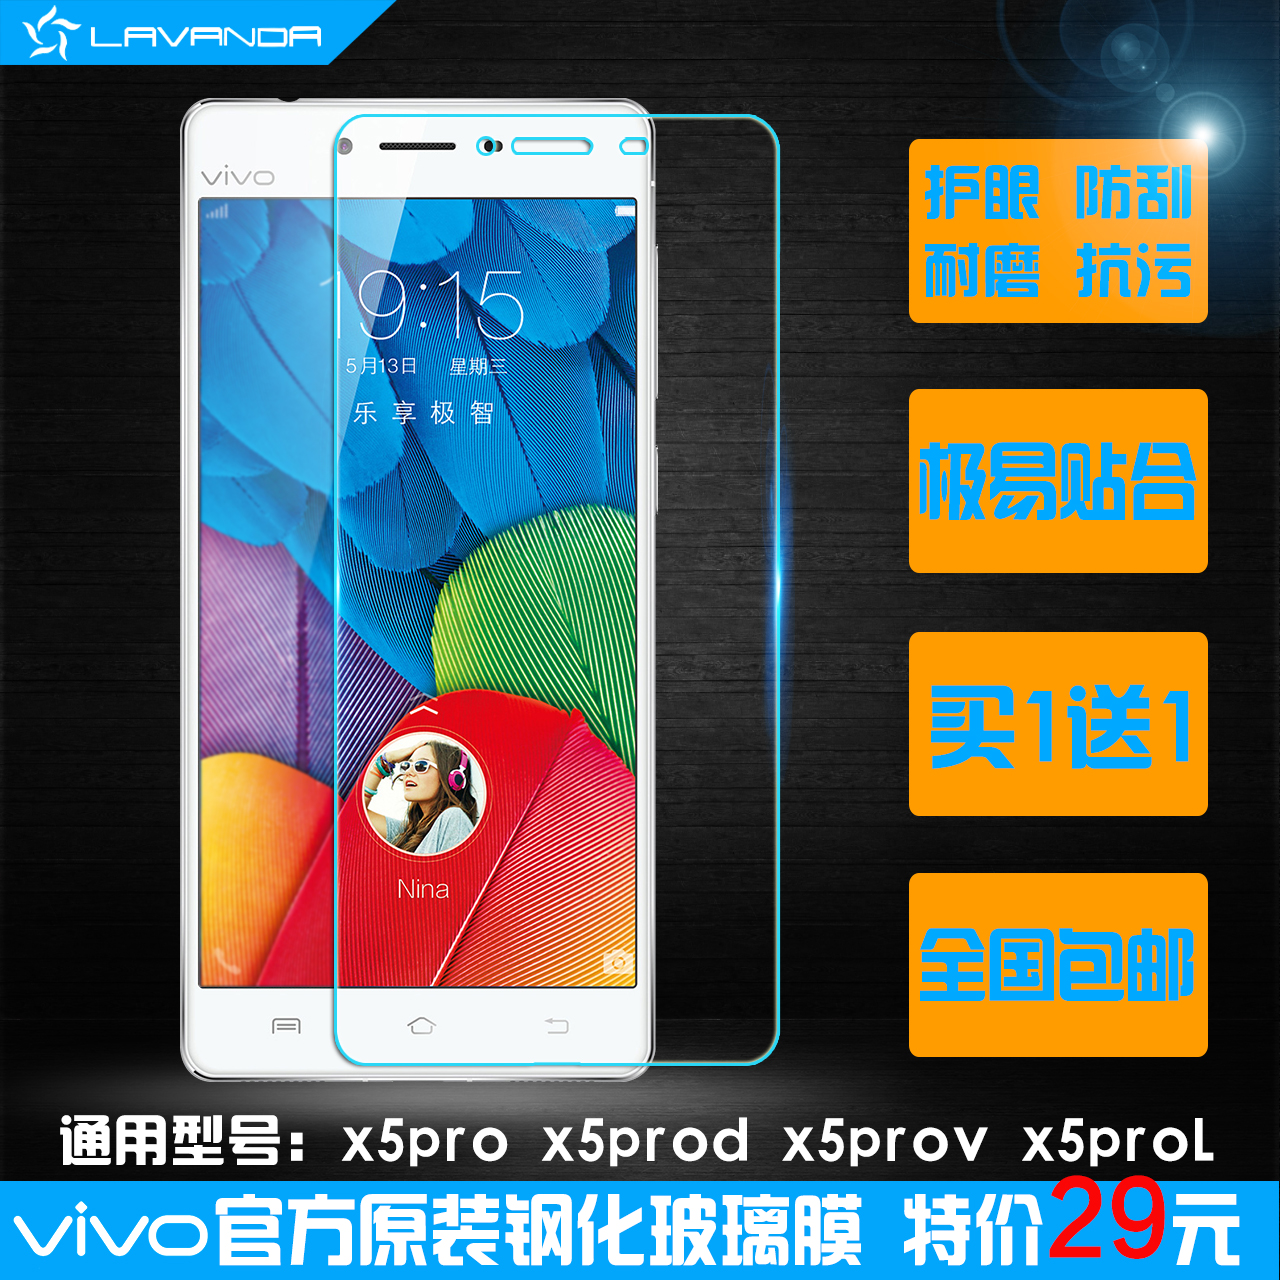 vivox5pro钢化膜步步高x5prod手机玻璃贴膜x5prov高清防爆膜透明